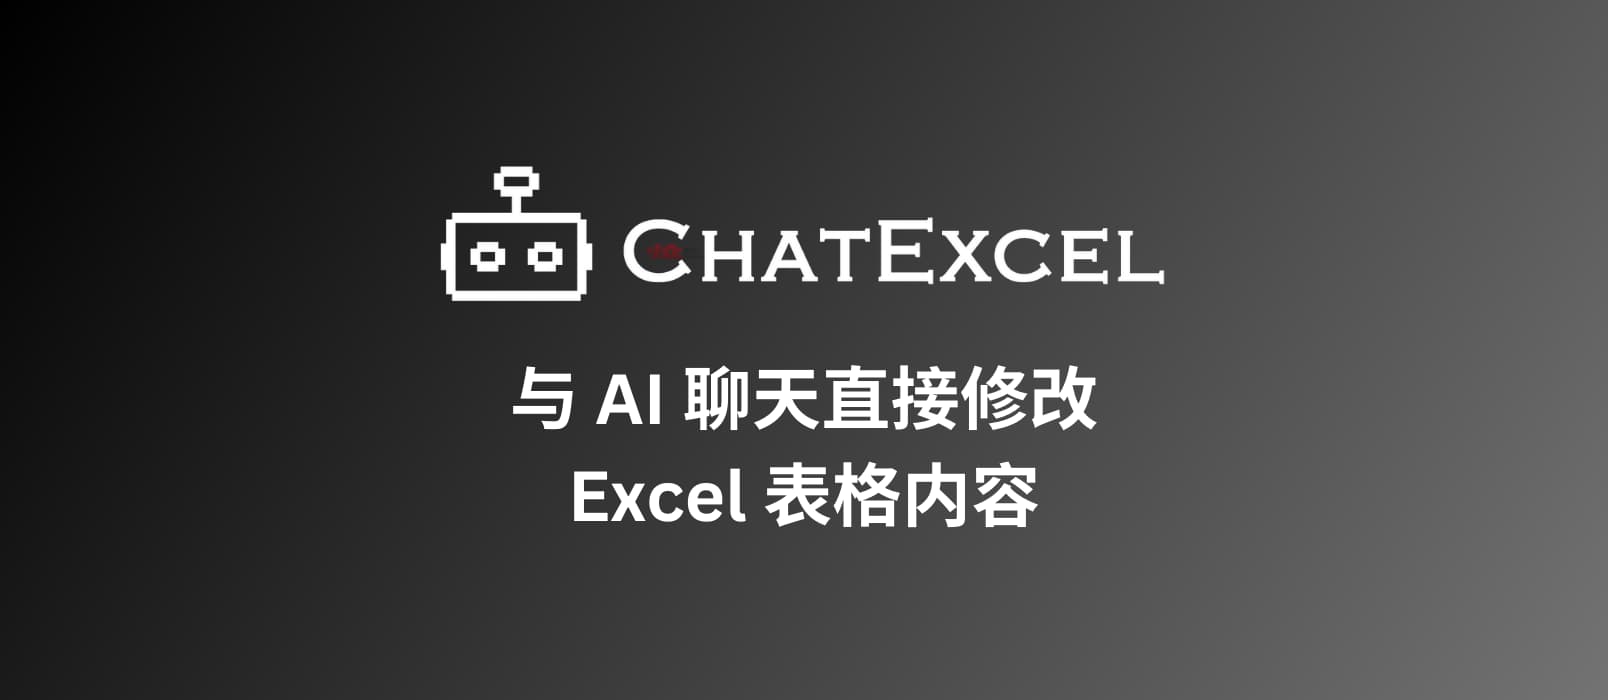 酷表ChatExcel - 与 AI 聊天直接修改 Excel 表格内容